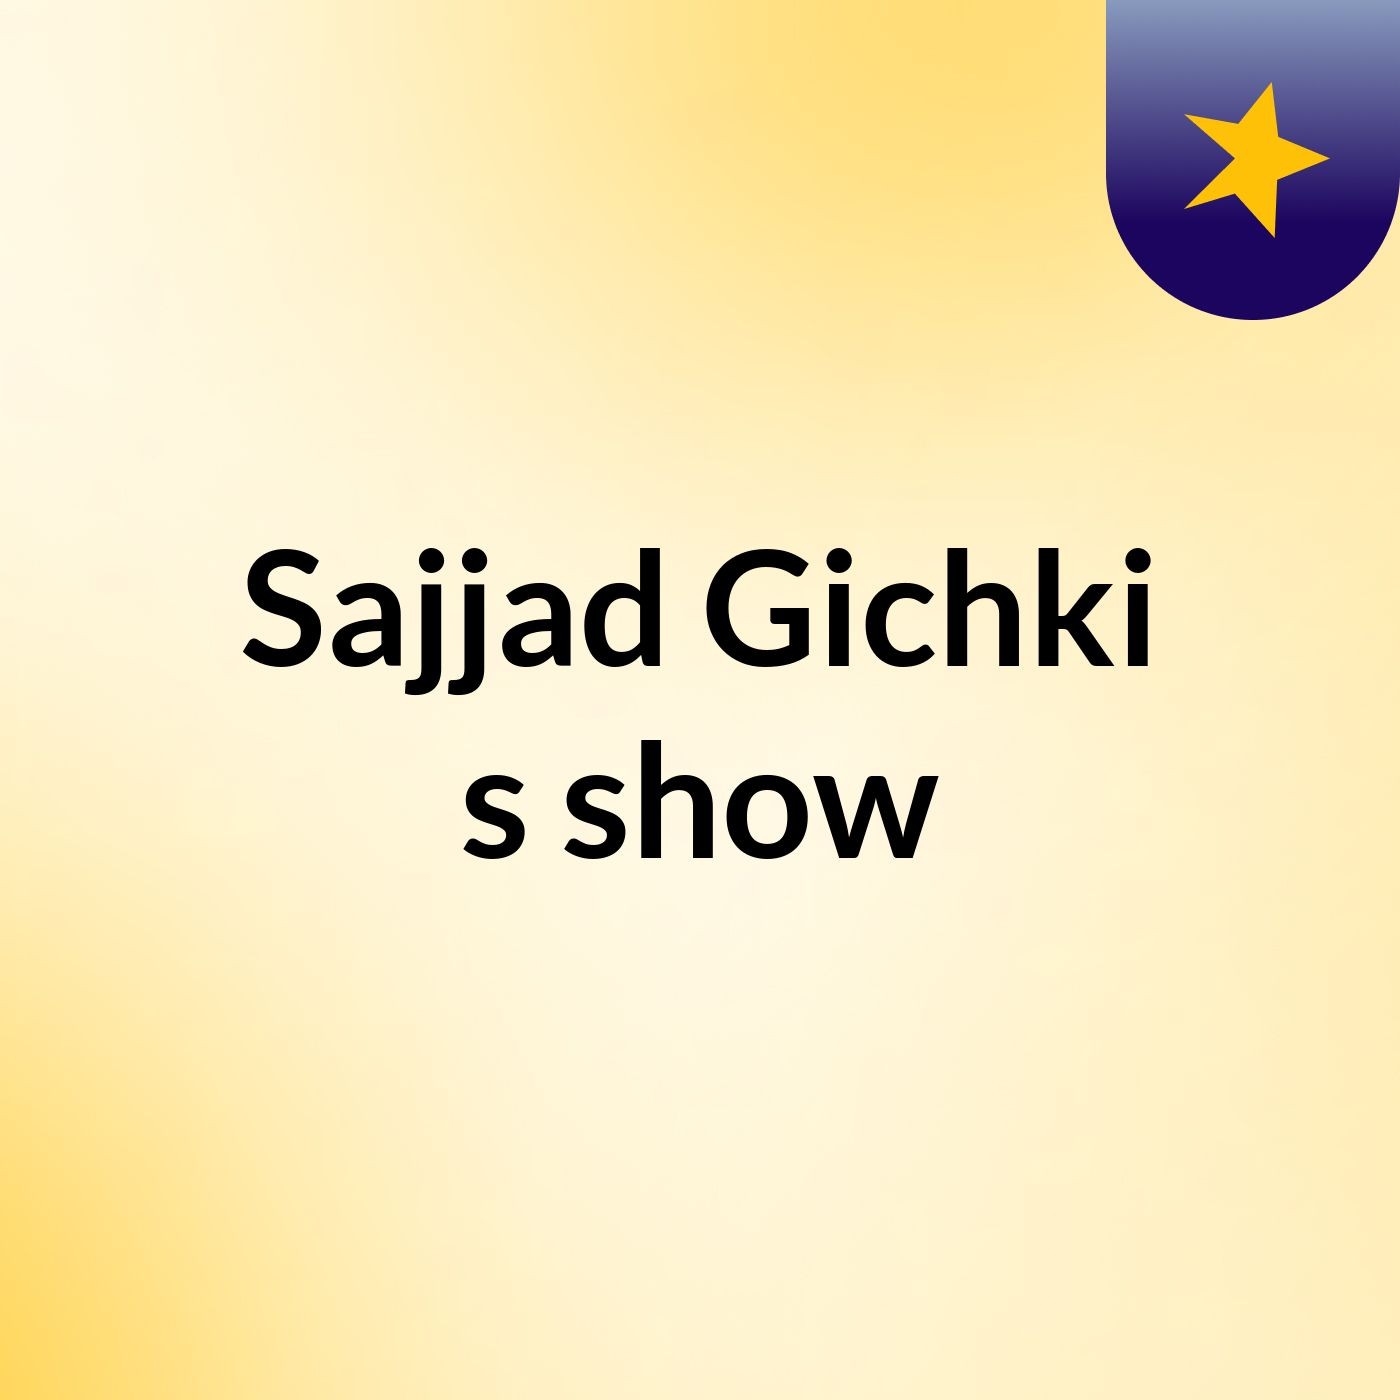 Sajjad Gichki's show